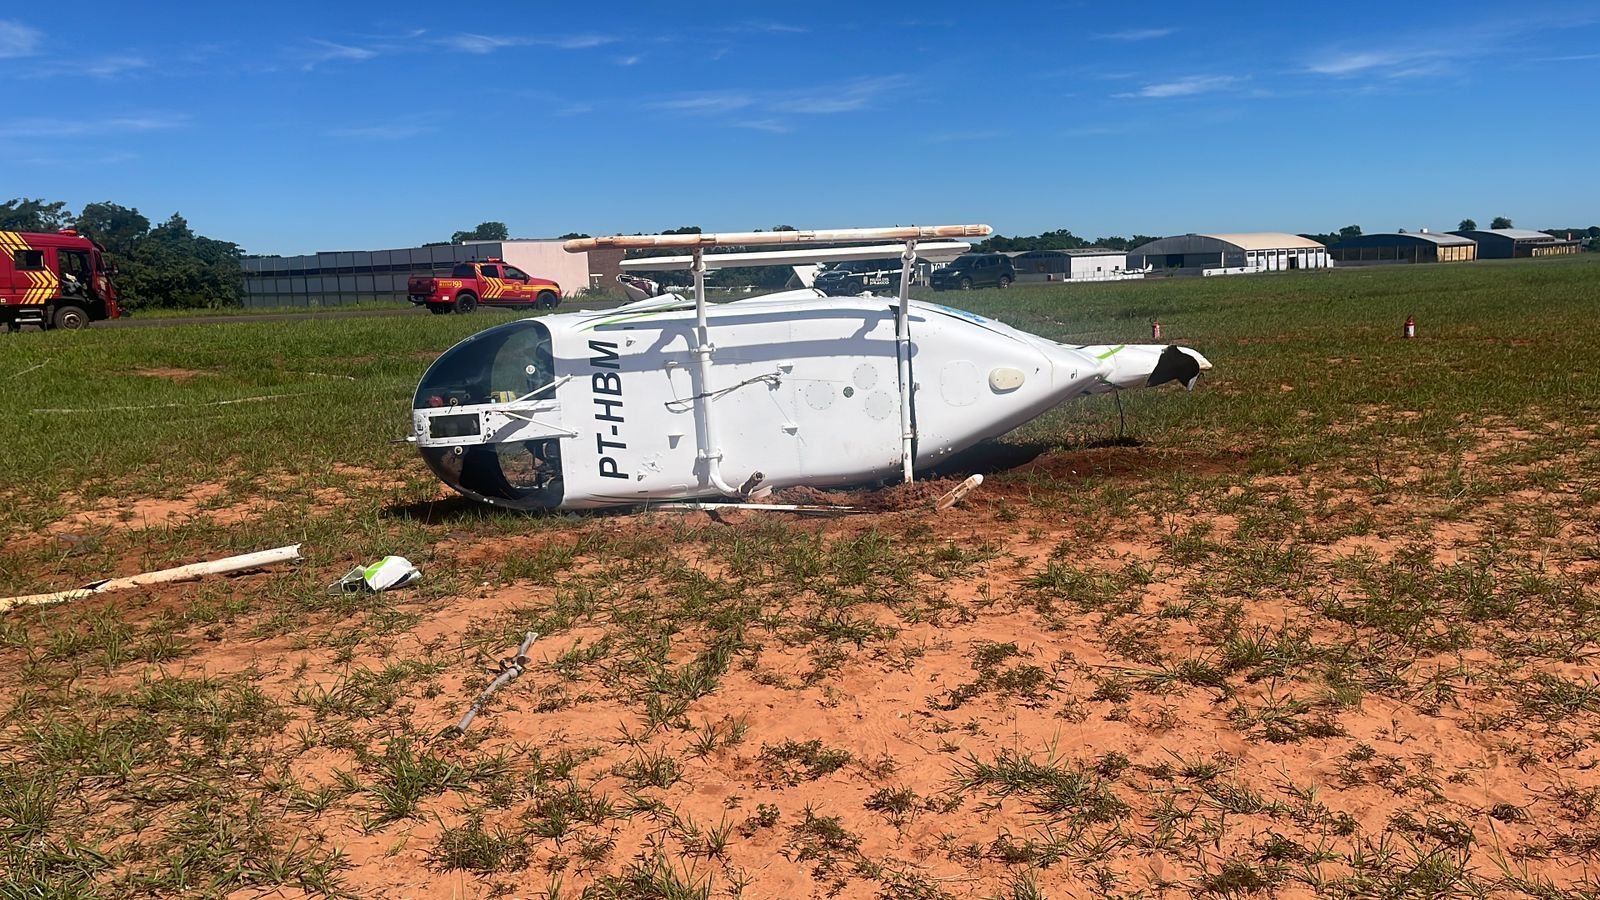 Helicóptero cai com quatro pessoas a bordo em aeroporto da Casa Militar, no Mato Grosso do Sul